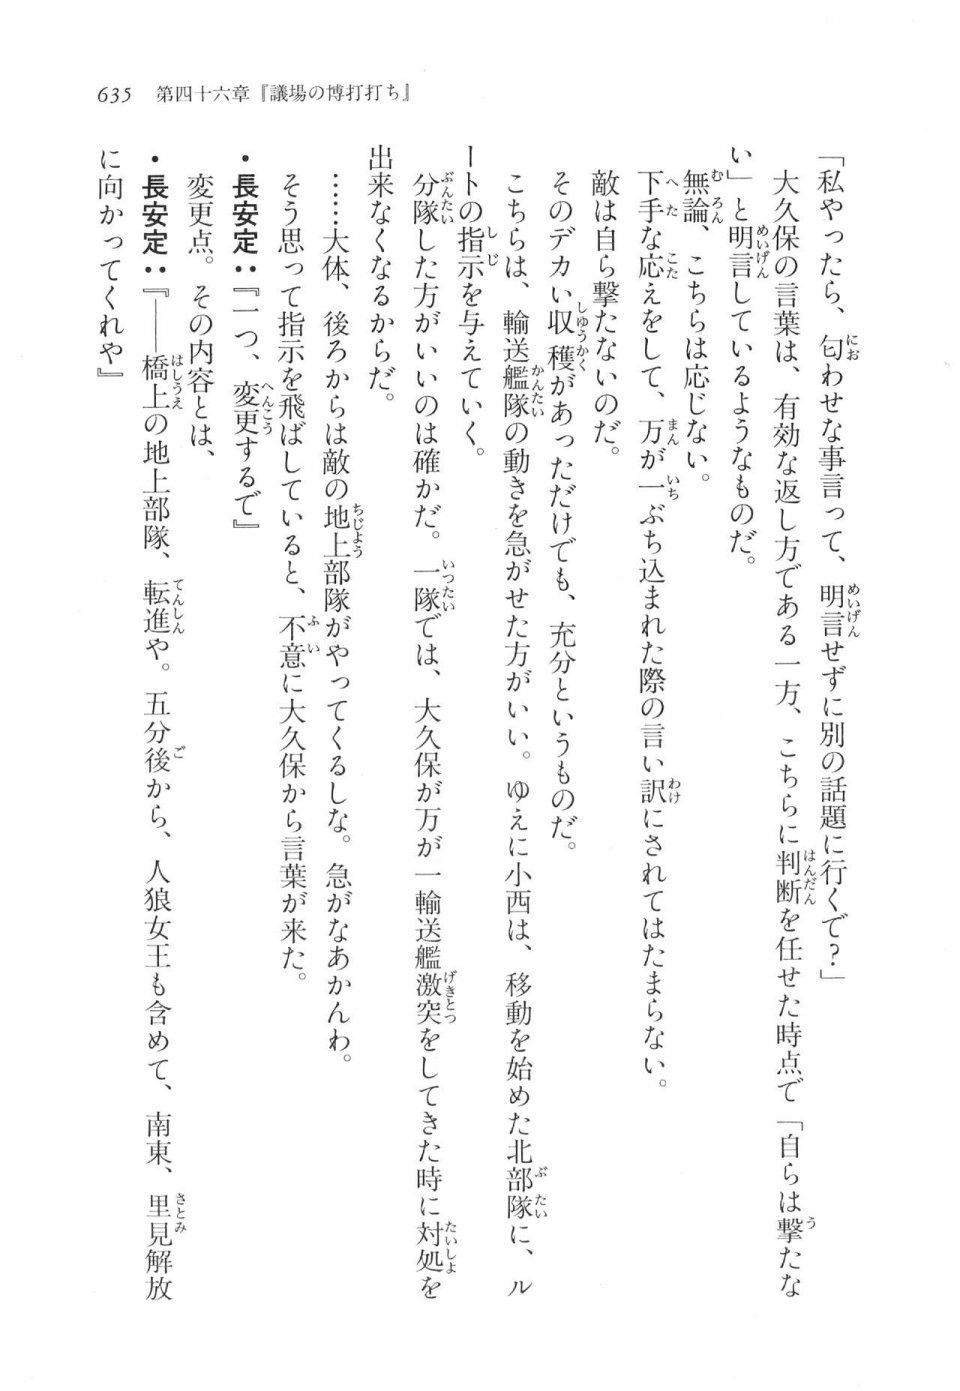 Kyoukai Senjou no Horizon LN Vol 17(7B) - Photo #637